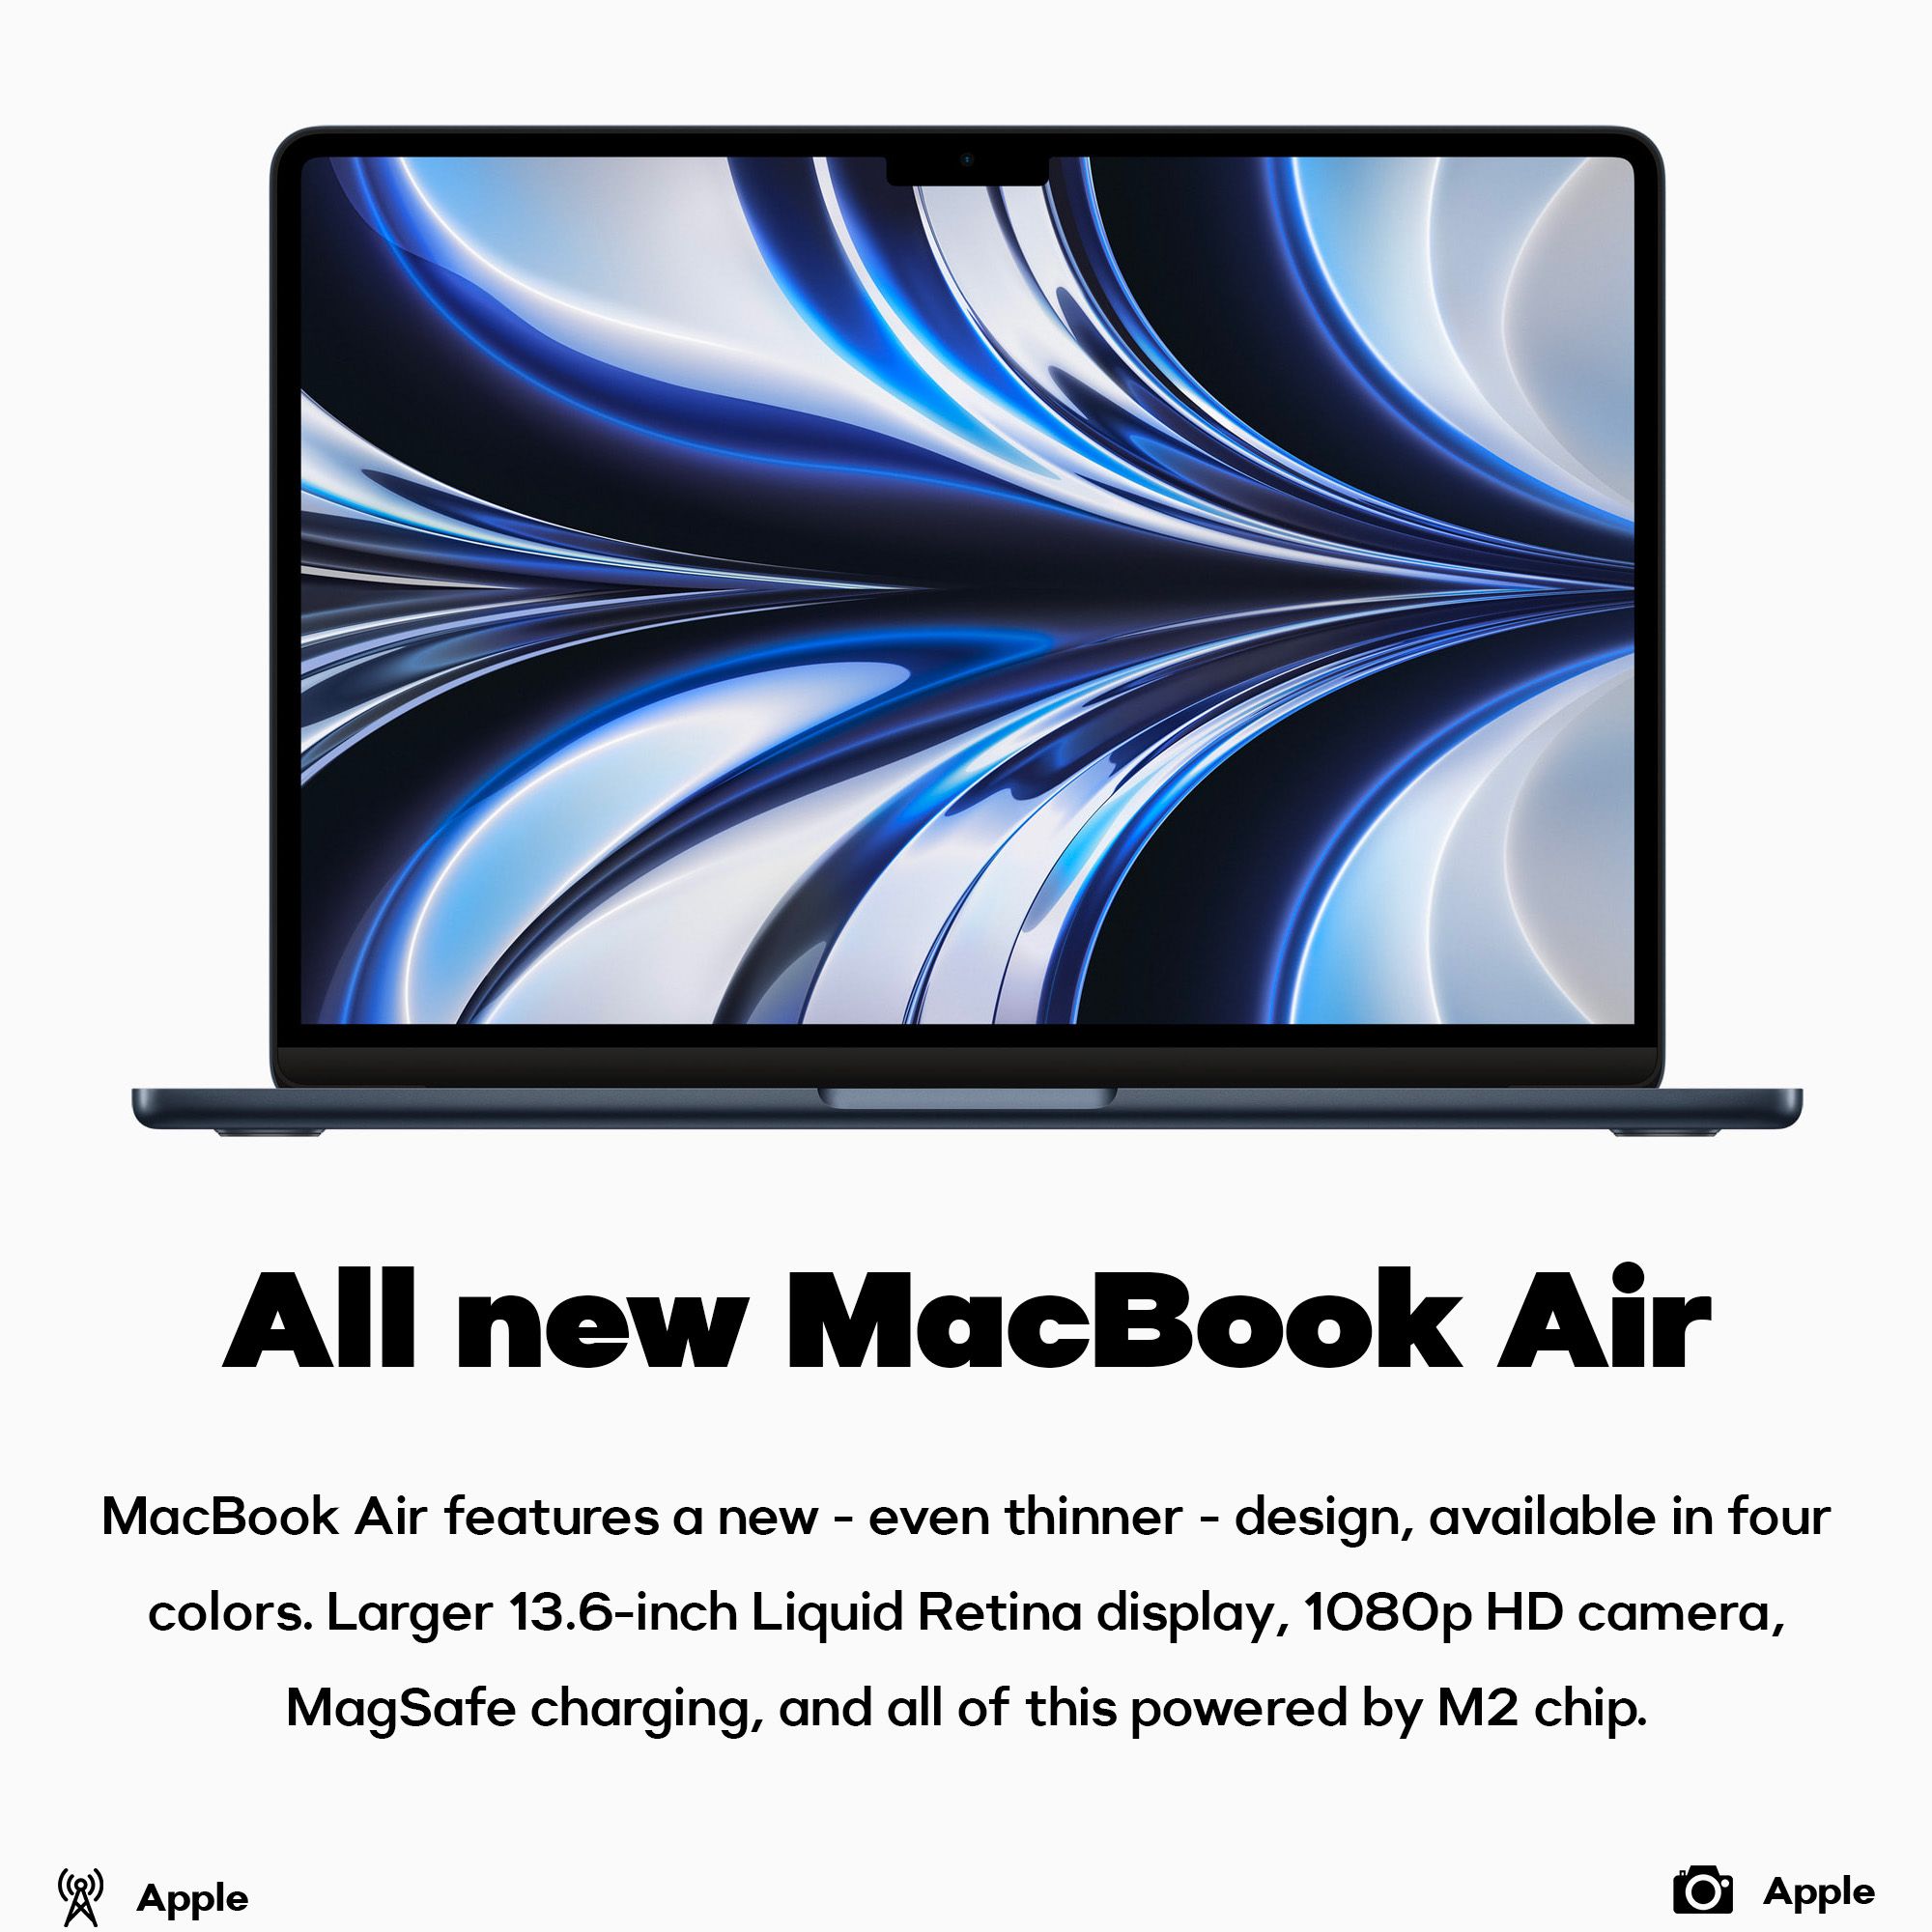 All new MacBook Air announced